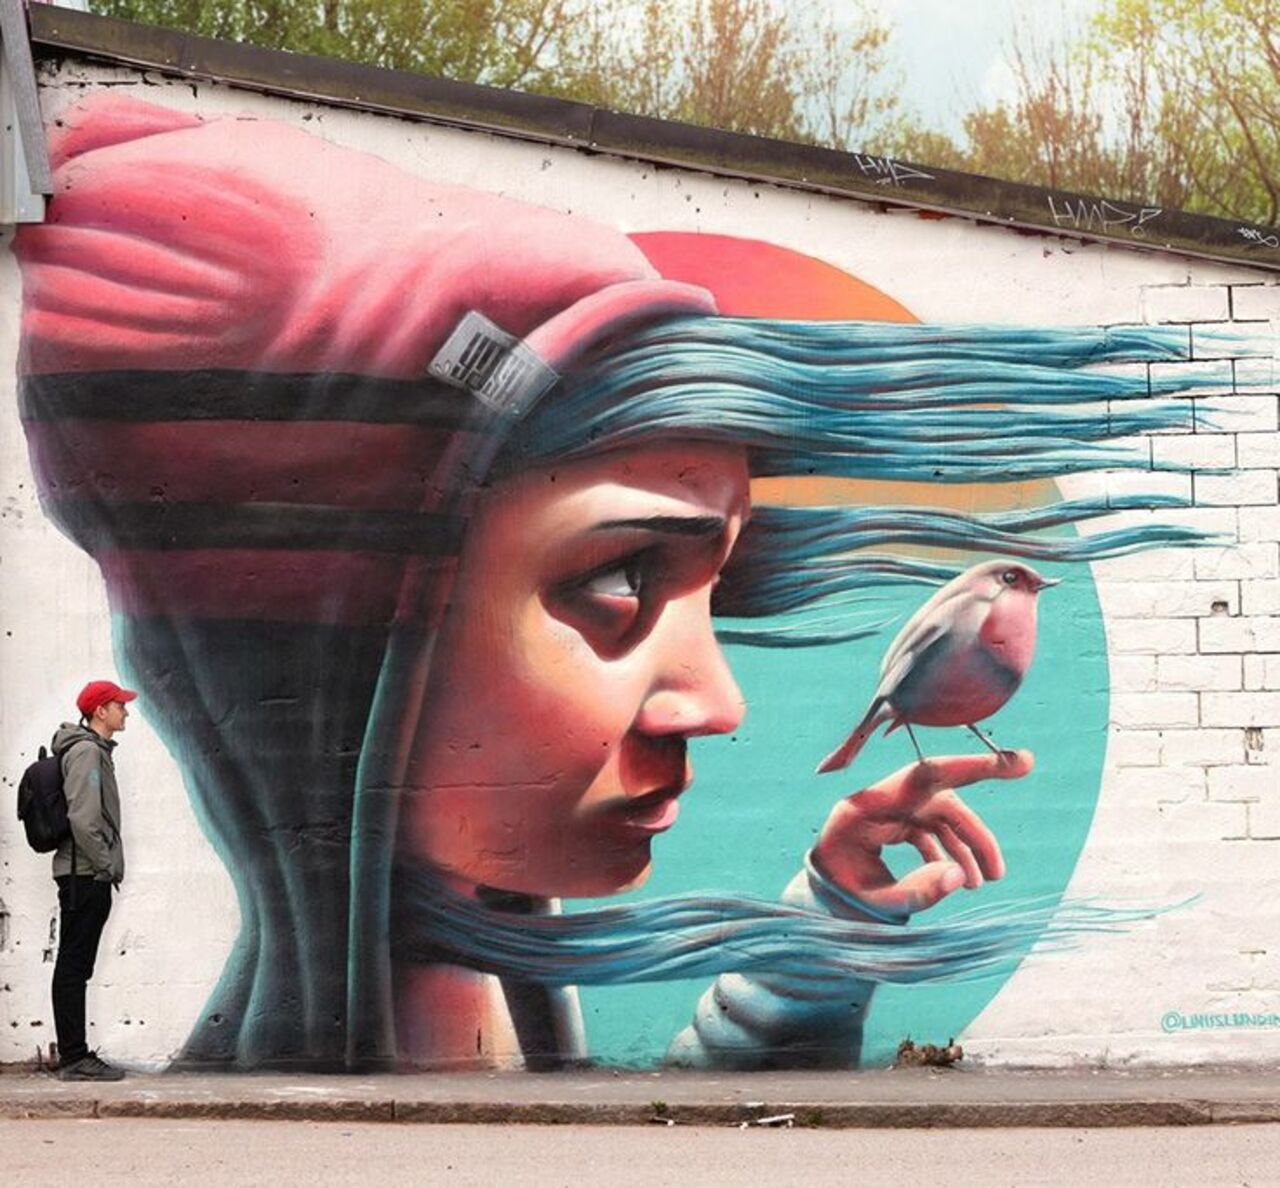 Mural by Stockholm, Sweden-based artist Yash#graffiti #mural #streetart https://t.co/JkKVS2IwY2